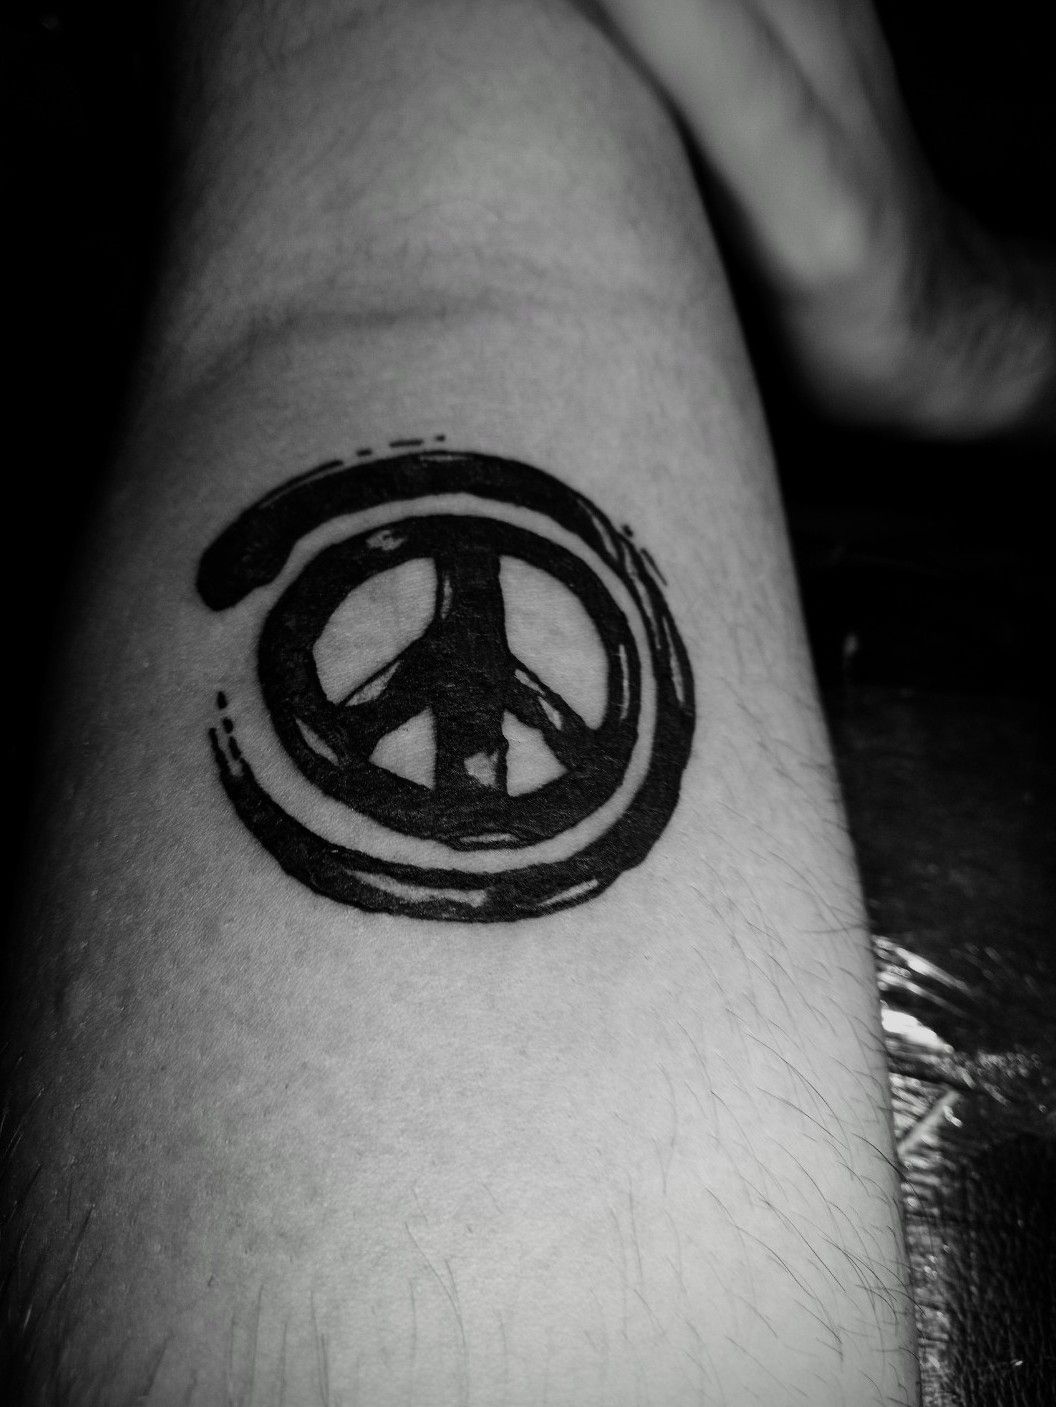 ☮️ Symbol Tattoo | peace tattoo | hand tattoo | palm tattoo  #peacesymboltattoo #tattooideas #art - YouTube